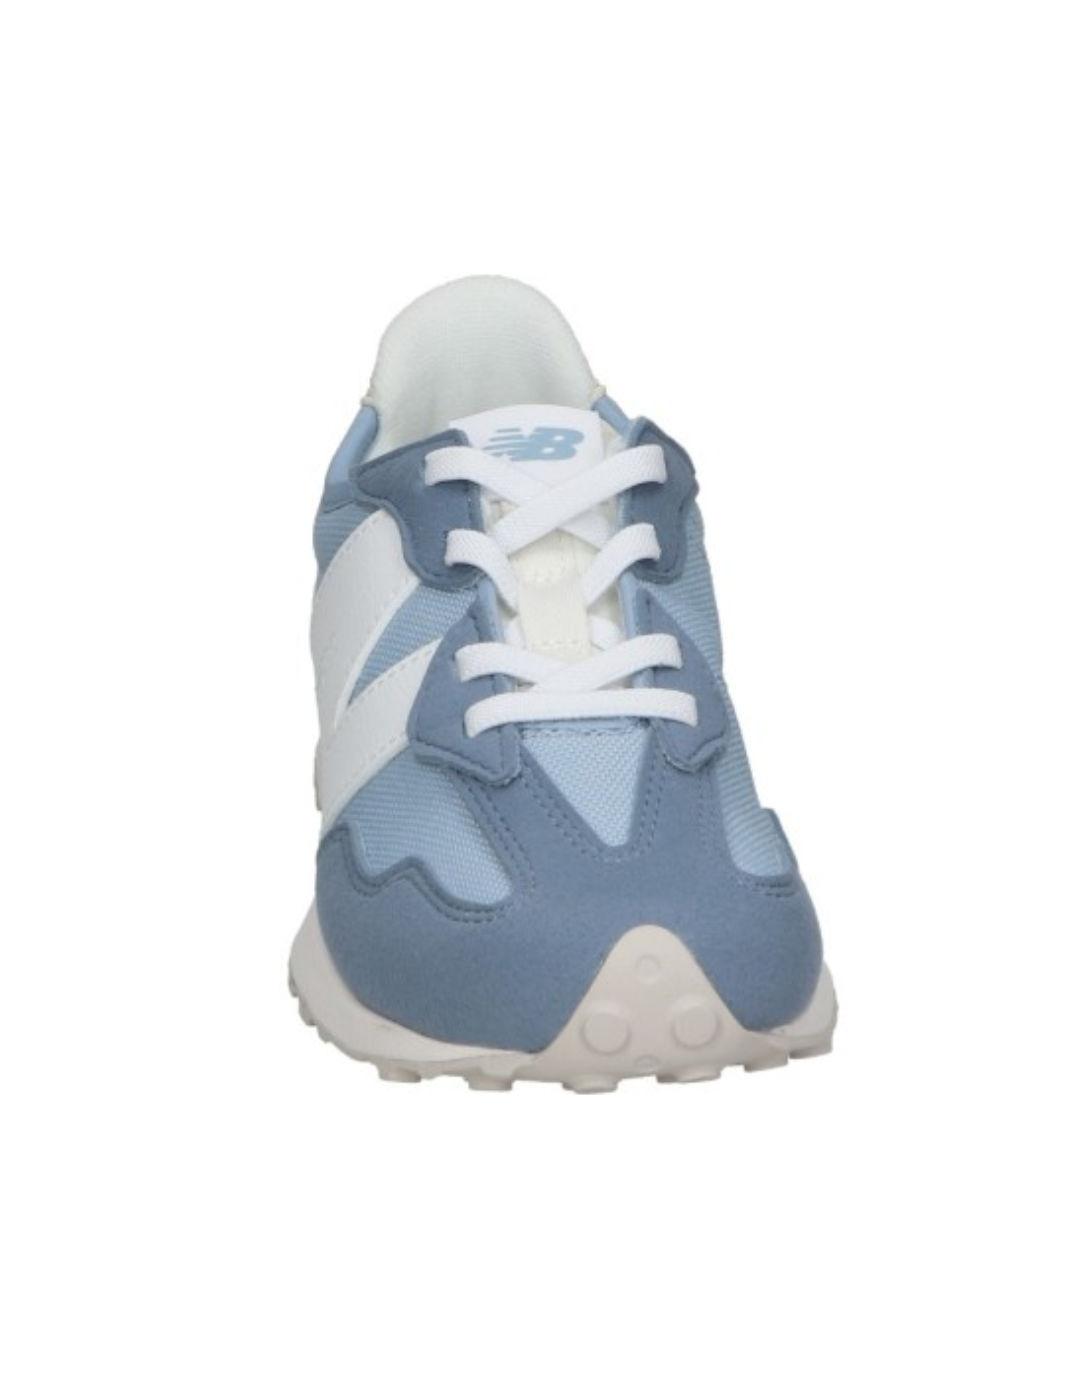 Zapatillas New Balance 327 azul y beige cordones para niño